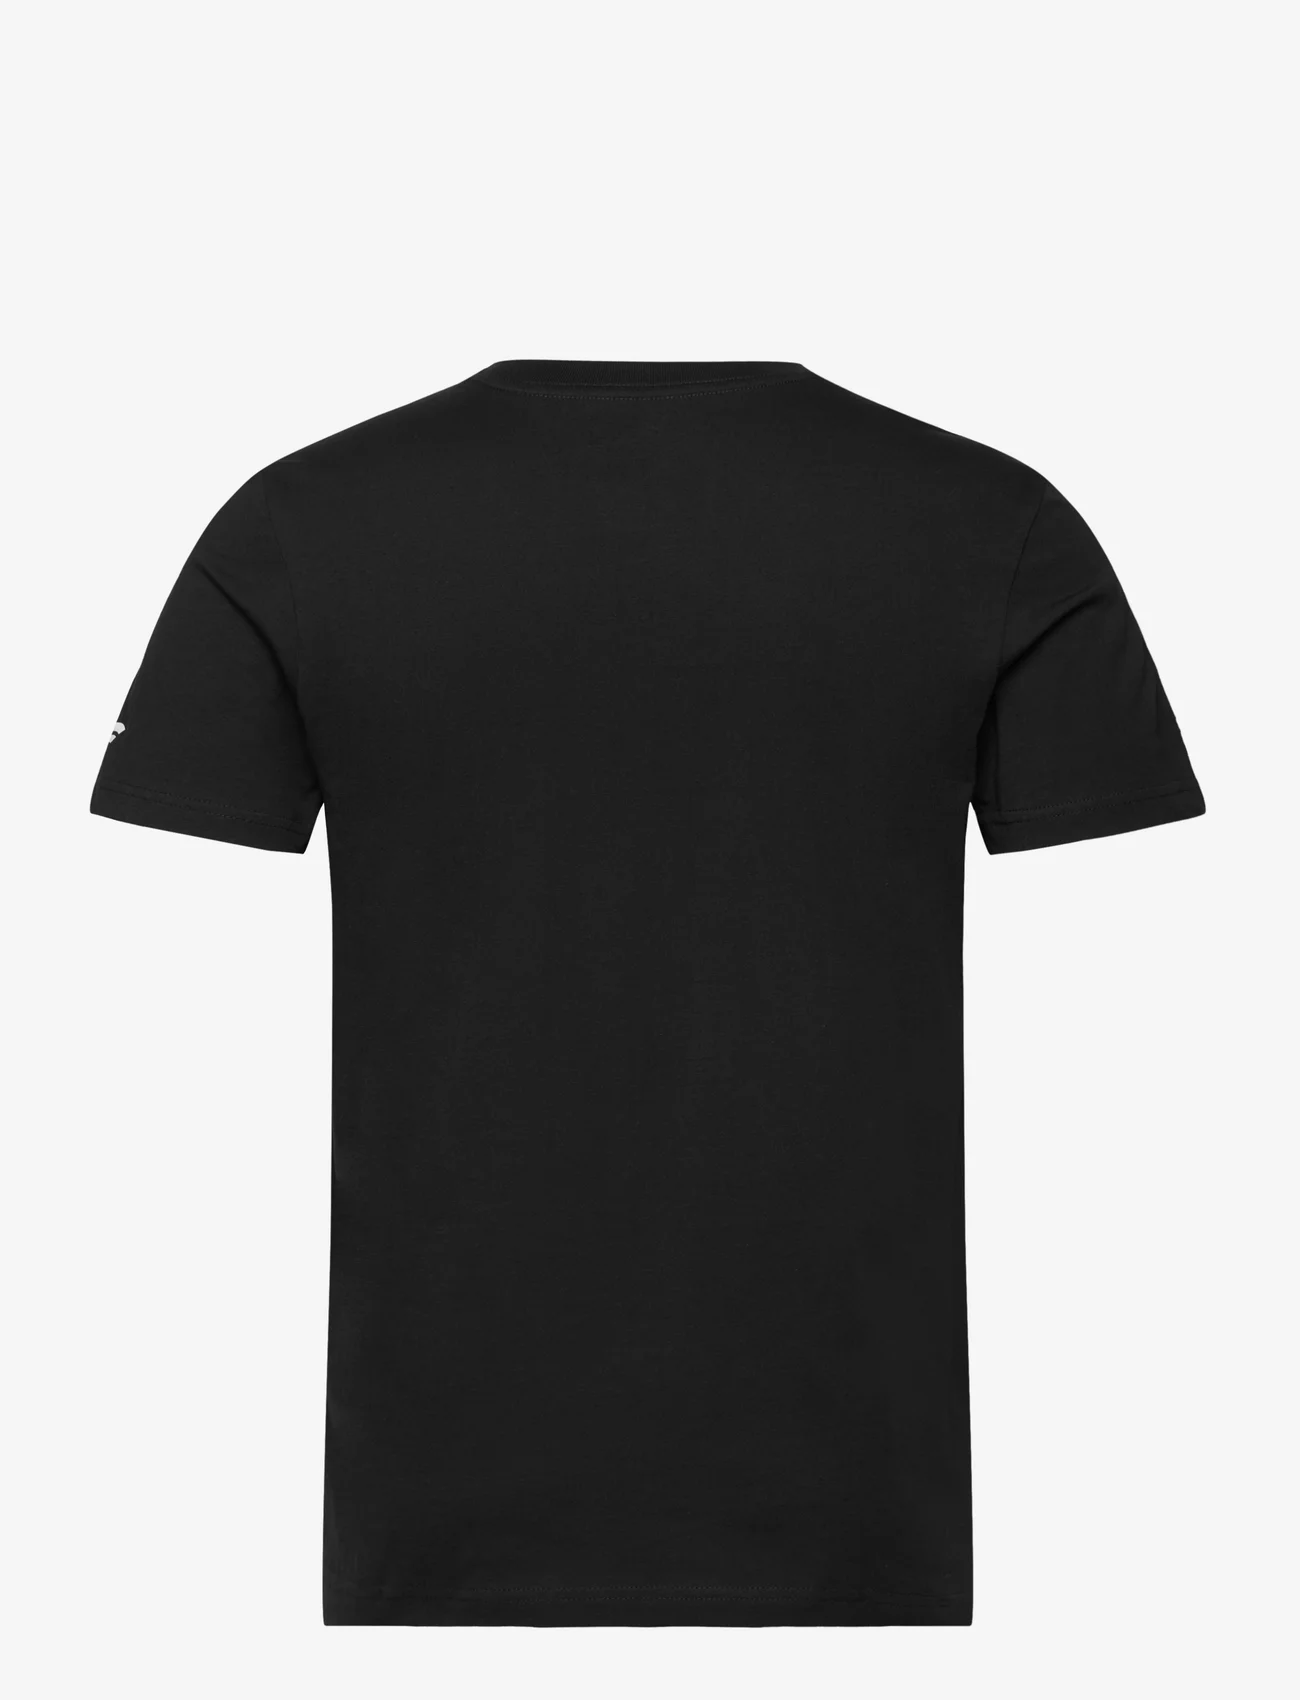 Fanatics - Las Vegas Raiders Primary Logo Graphic T-Shirt - short-sleeved t-shirts - black - 1